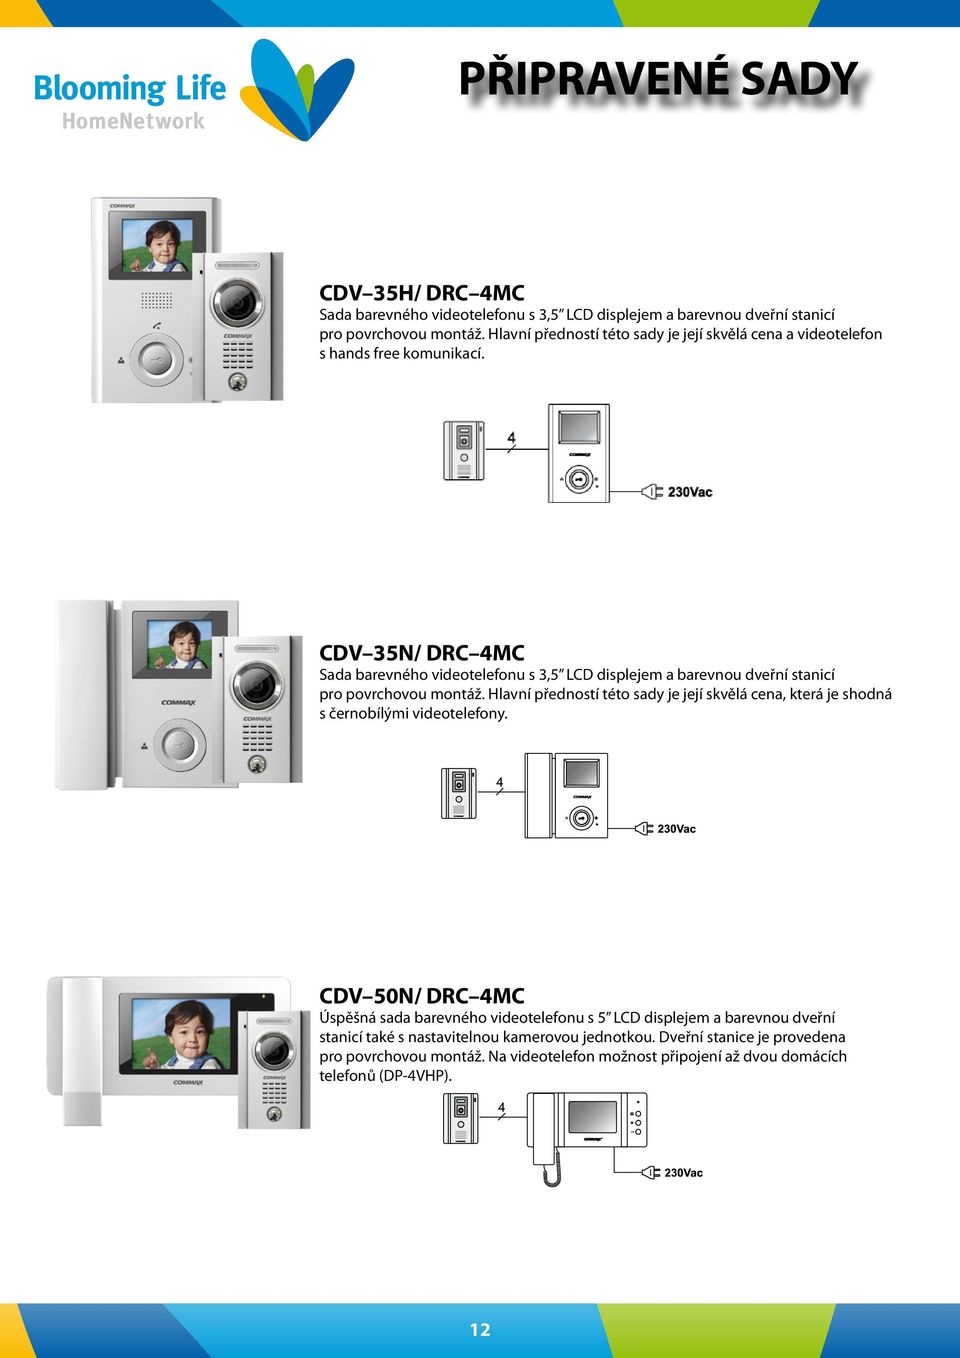 CDV 35N/ DRC 4MC Sada barevného videotelefonu s 3,5 LCD displejem a barevnou dveřní stanicí pro povrchovou montáž.